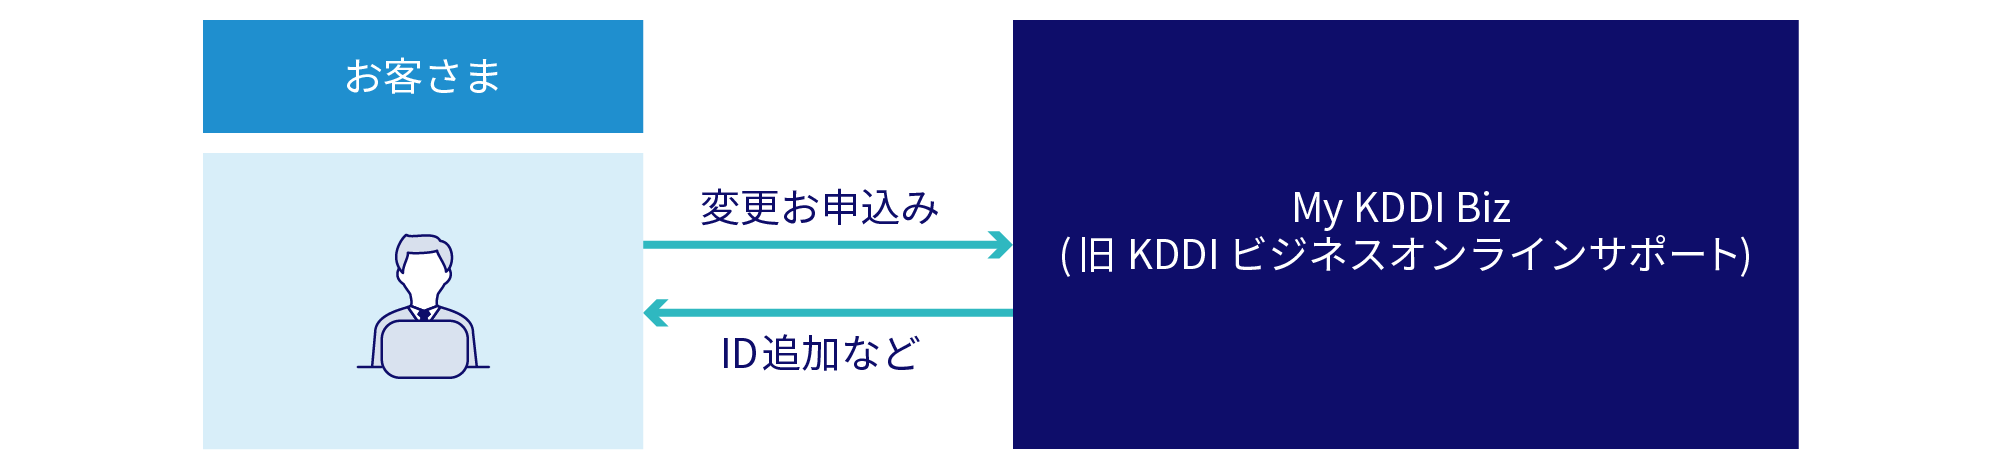 お客さまから変更お申し込みいただた後、My KDDI Biz (旧 KDDI ビジネスオンラインサポート) からID追加などをします。